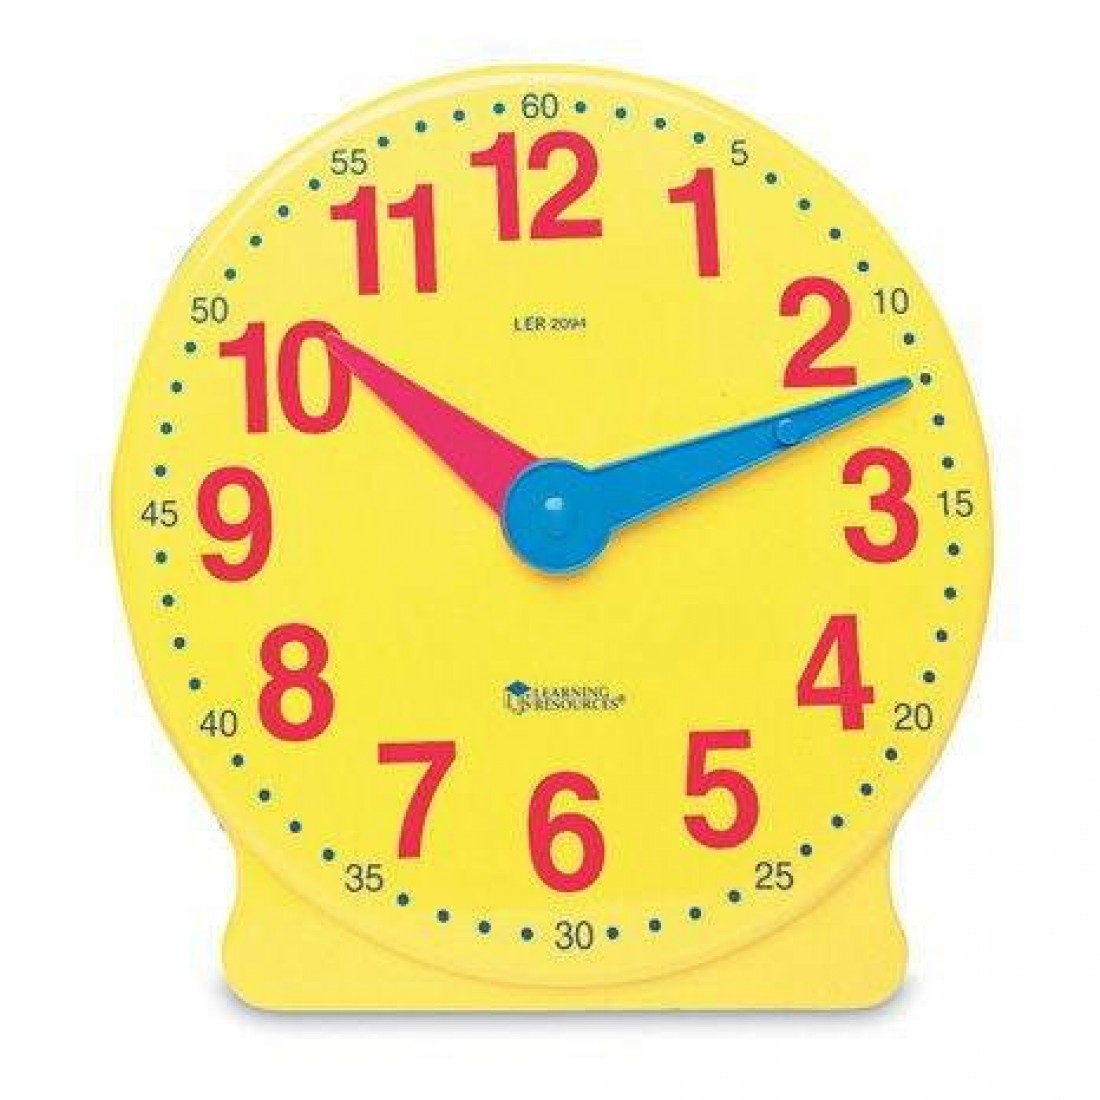 Как сделать часы на русский язык. Модель часов. Часы обучающие для детей. Модель часов демонстрационная. Модель циферблата часов для детей.